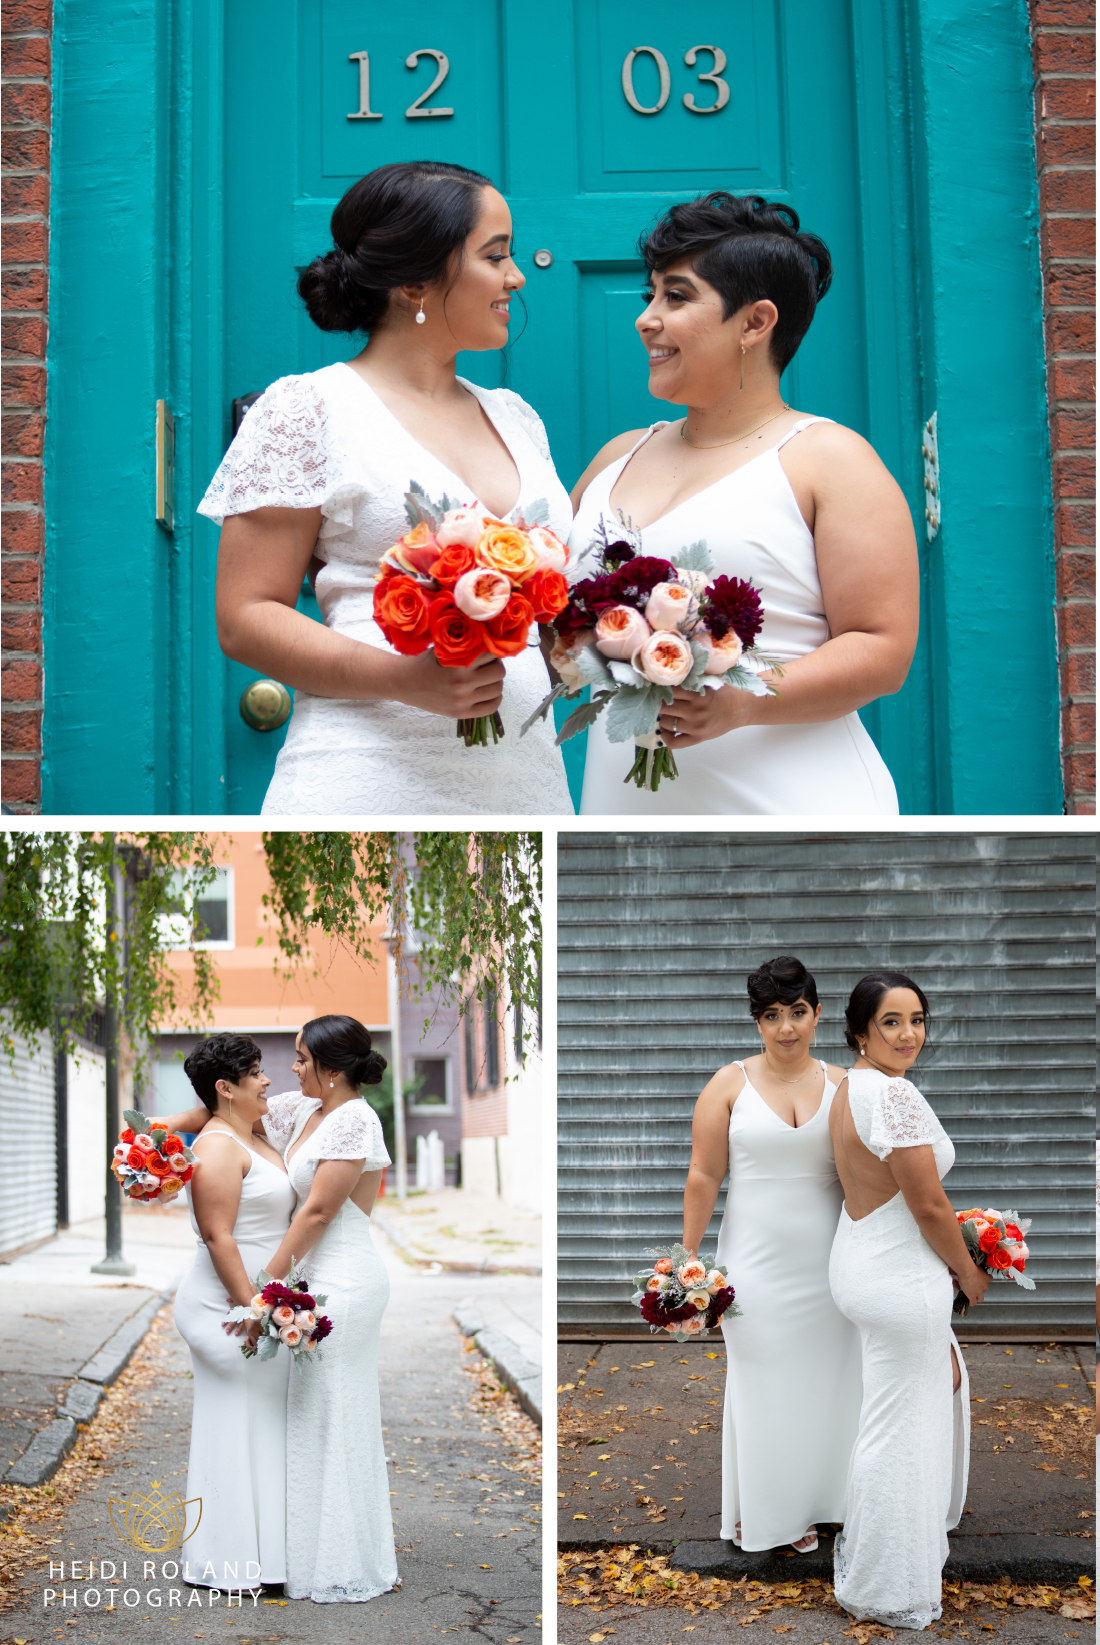 Brides in old city Philadelphia in front of blue door